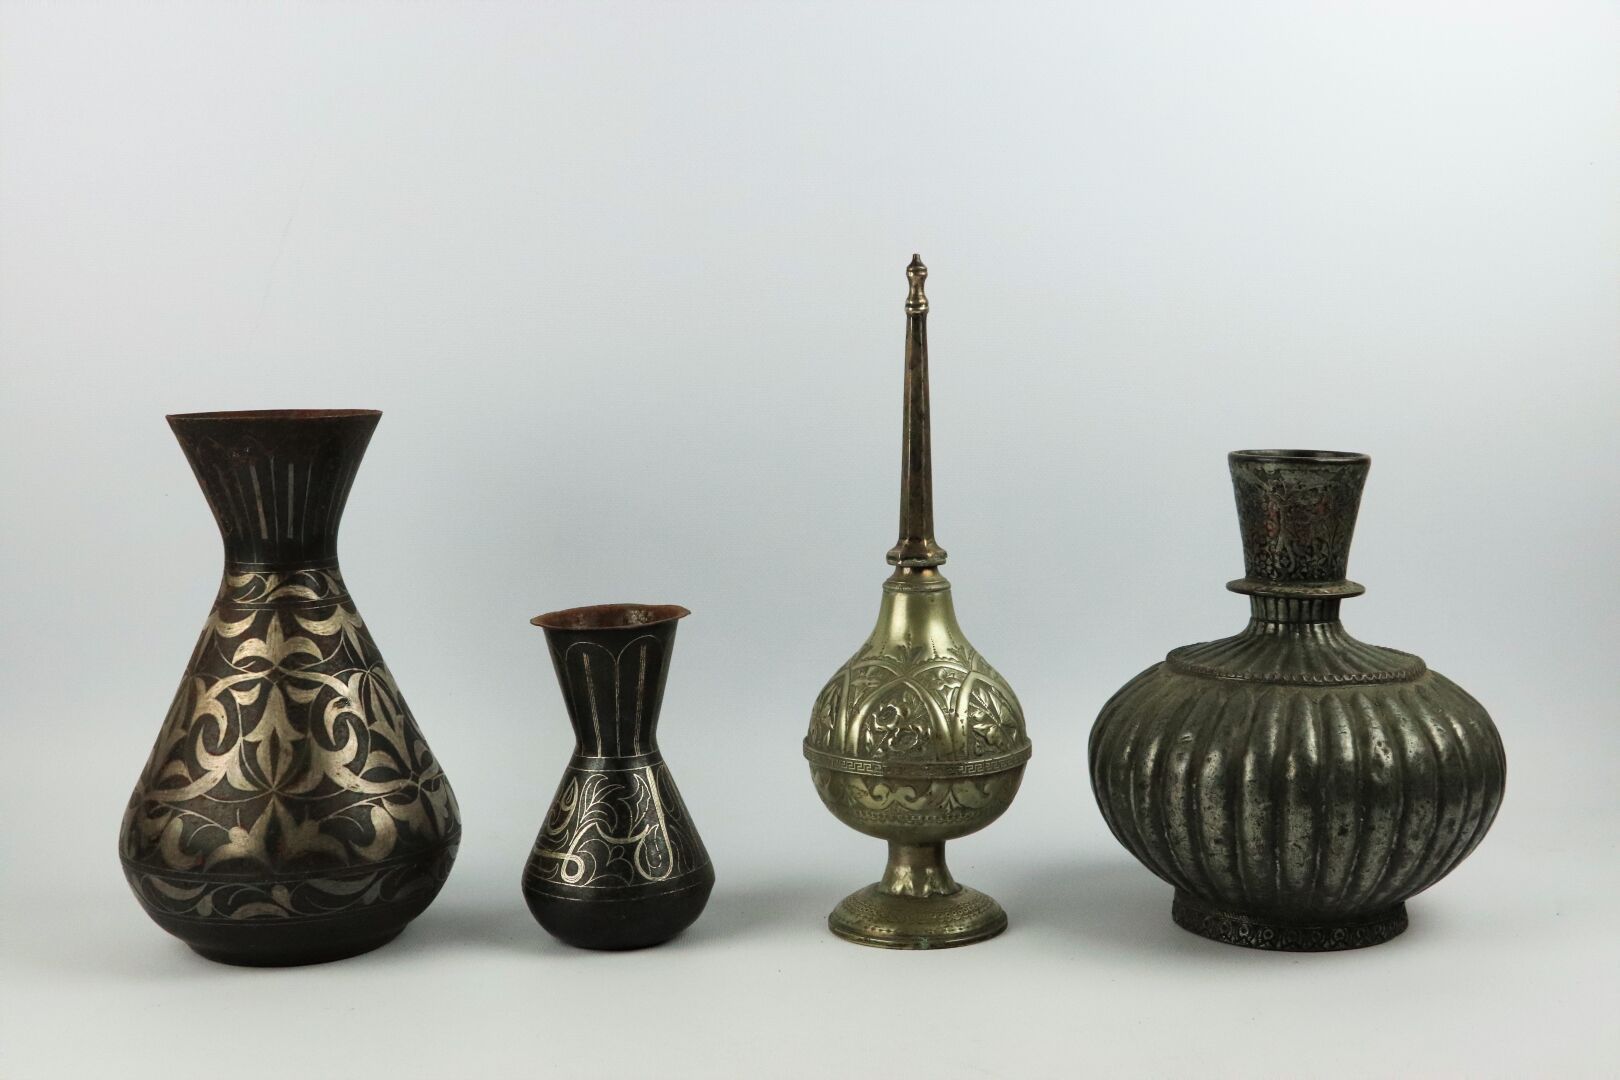 Null 近东和北非。

一套铜器包括:

两个带银色涅罗装饰的铁花瓶，一个镀银的铜质带状花瓶和一个金属洒水器。

高_14,7厘米至31厘米